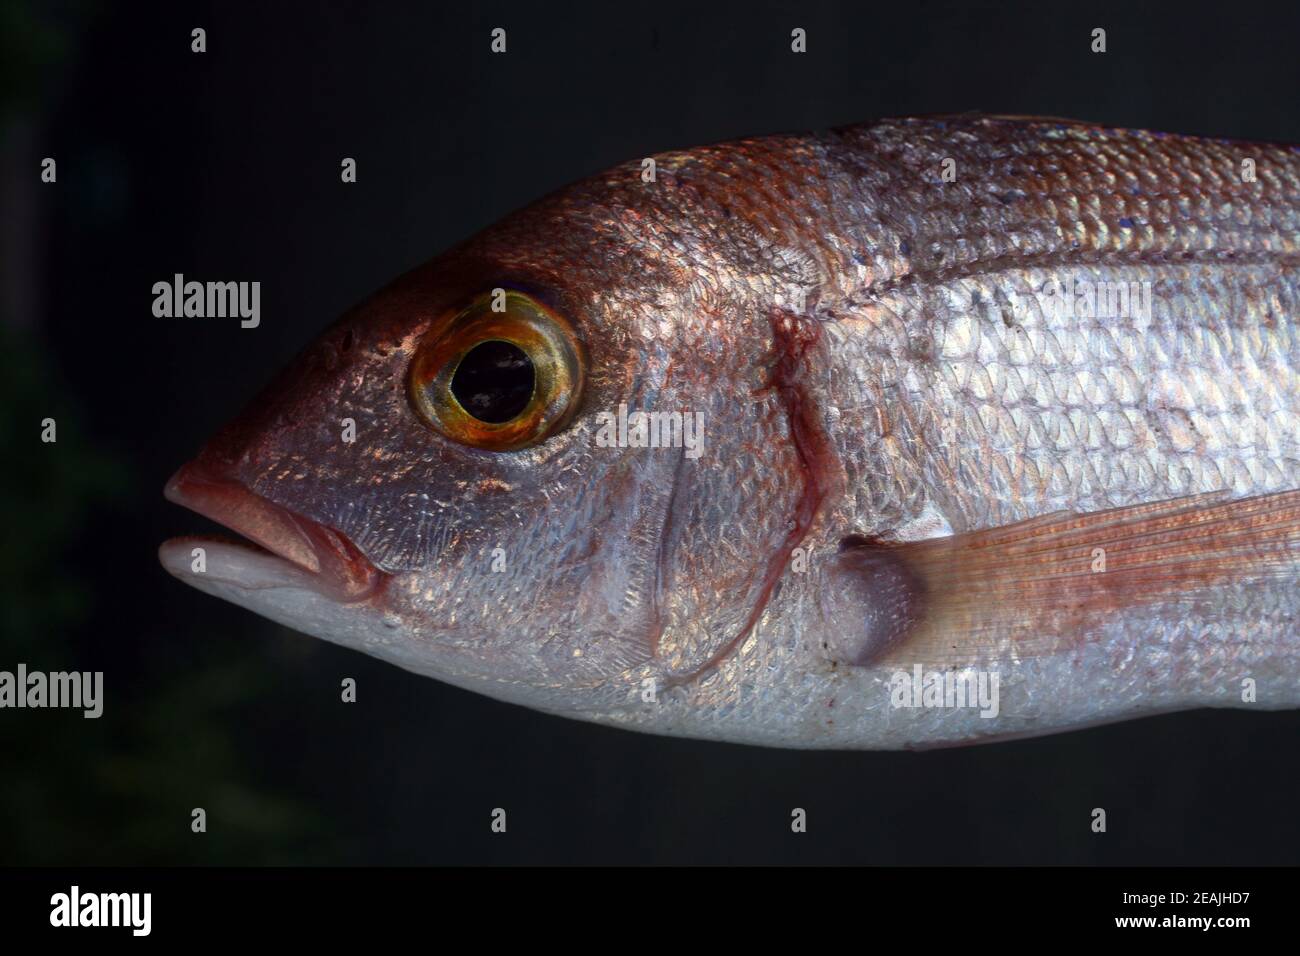 Common sea bream fish Stock Photo